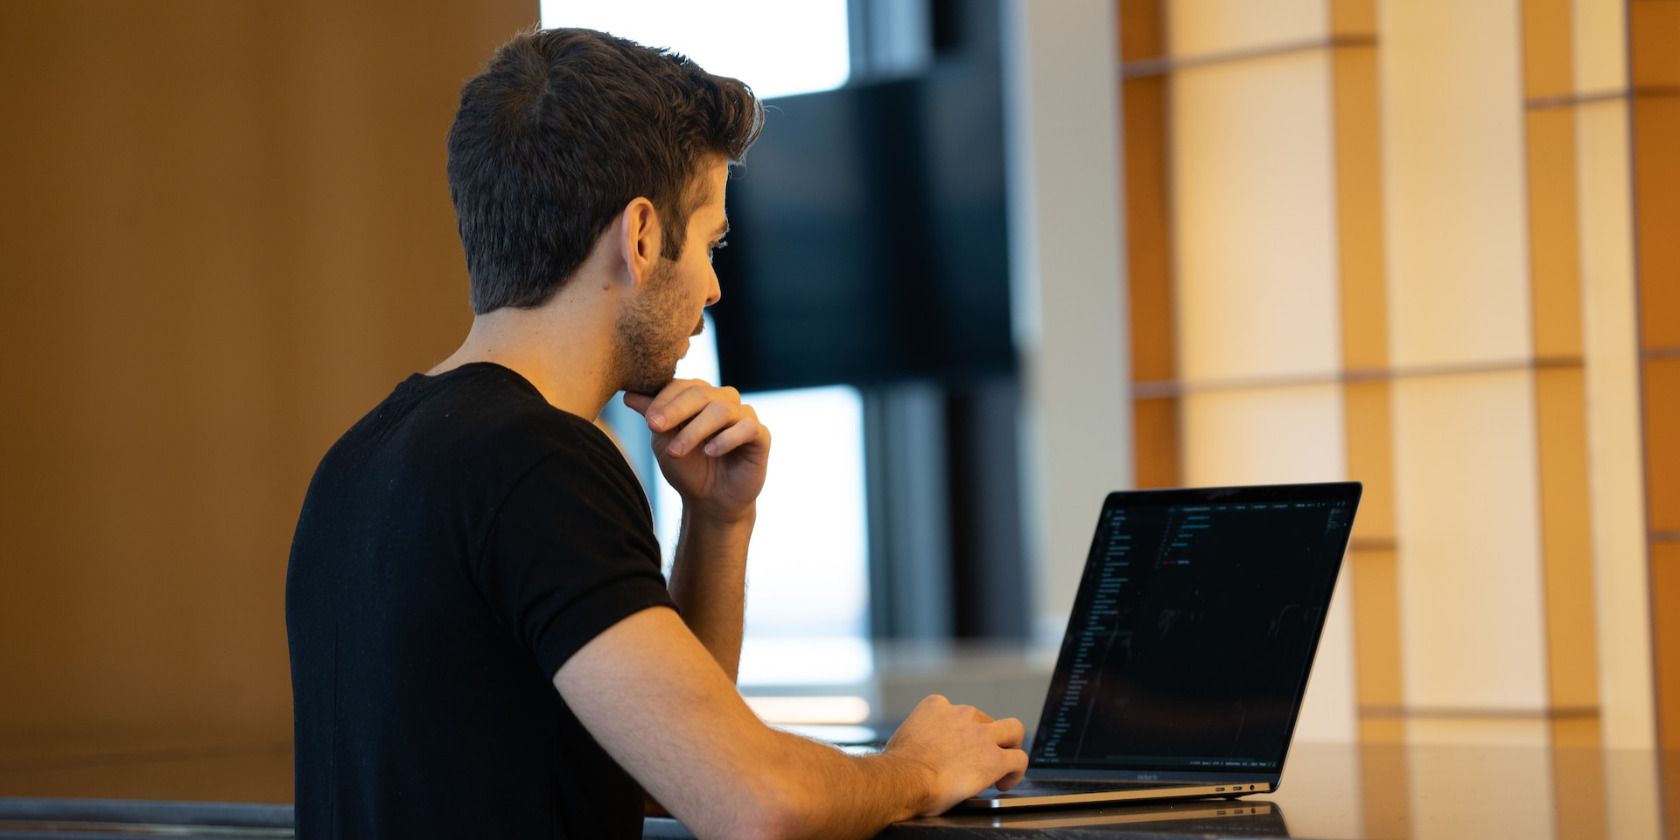 Man in black shirt using laptop